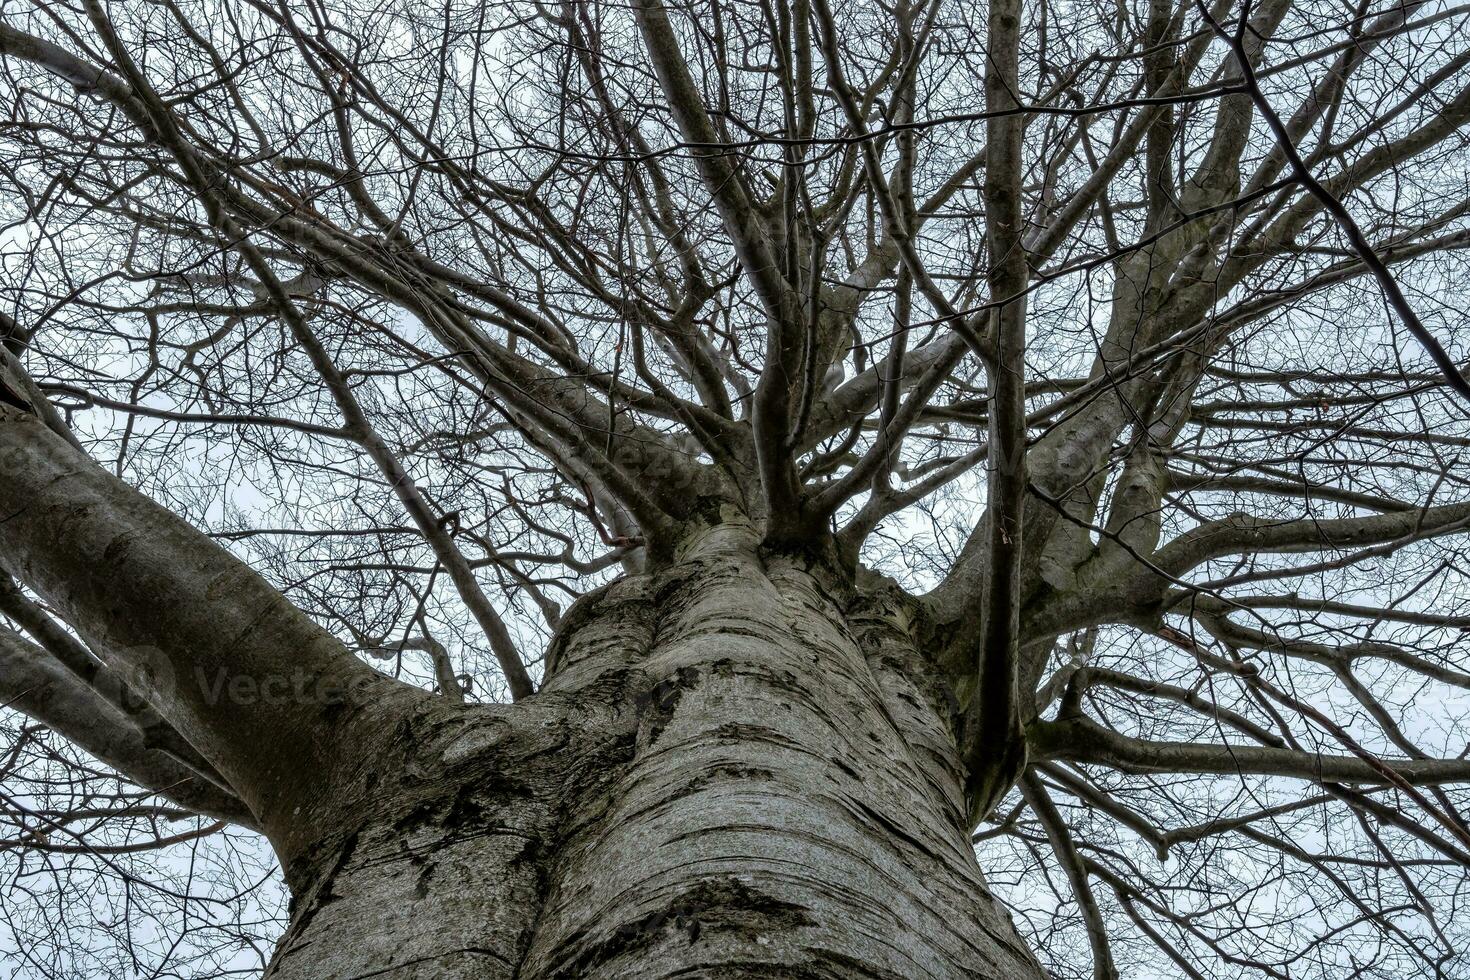 europeo haya árbol corona en invierno con perspectiva desde fondo a cima. desnudo árbol, sin hojas en invierno. protegido monumento árbol foto